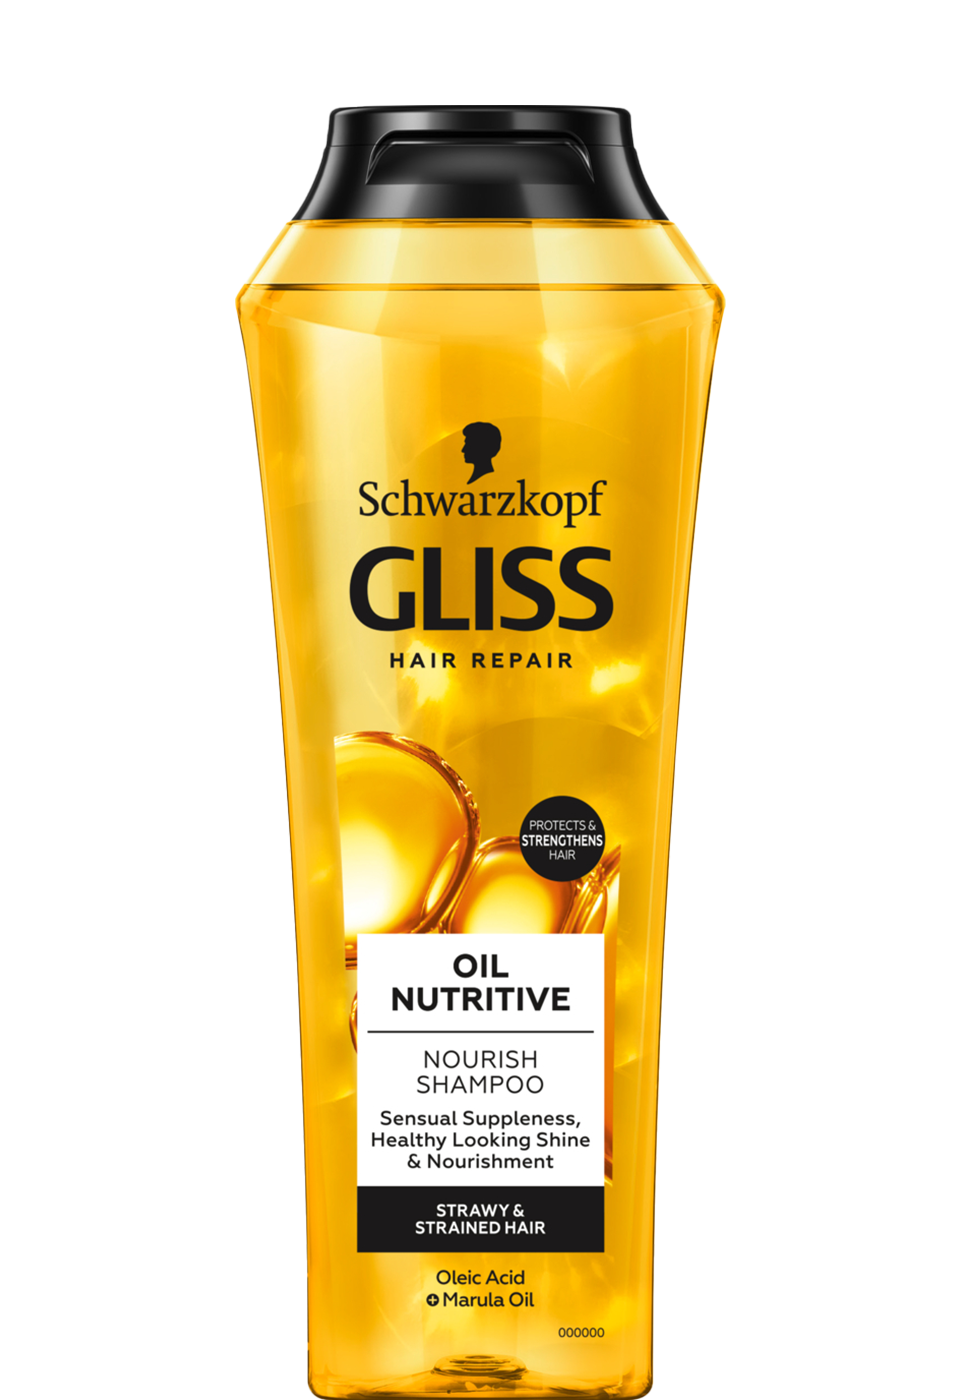 Schwarzkopf GLISS Hair Repair Oil Nutritive Shampoo